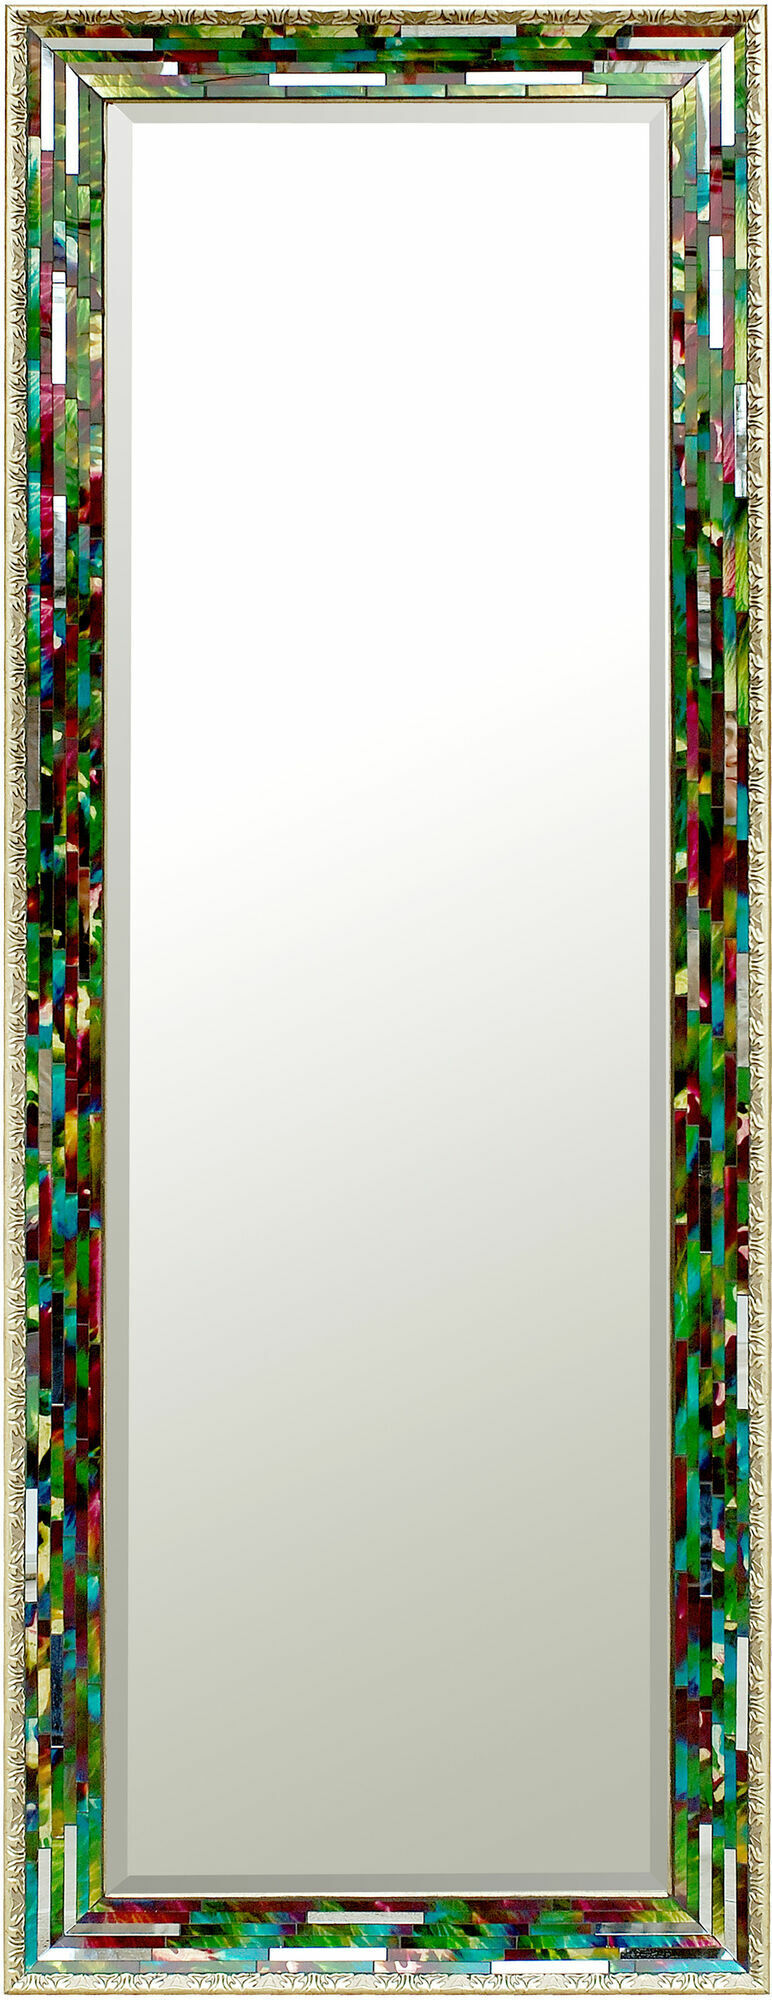 Spiegel mit bunten Mosaik Rahmen